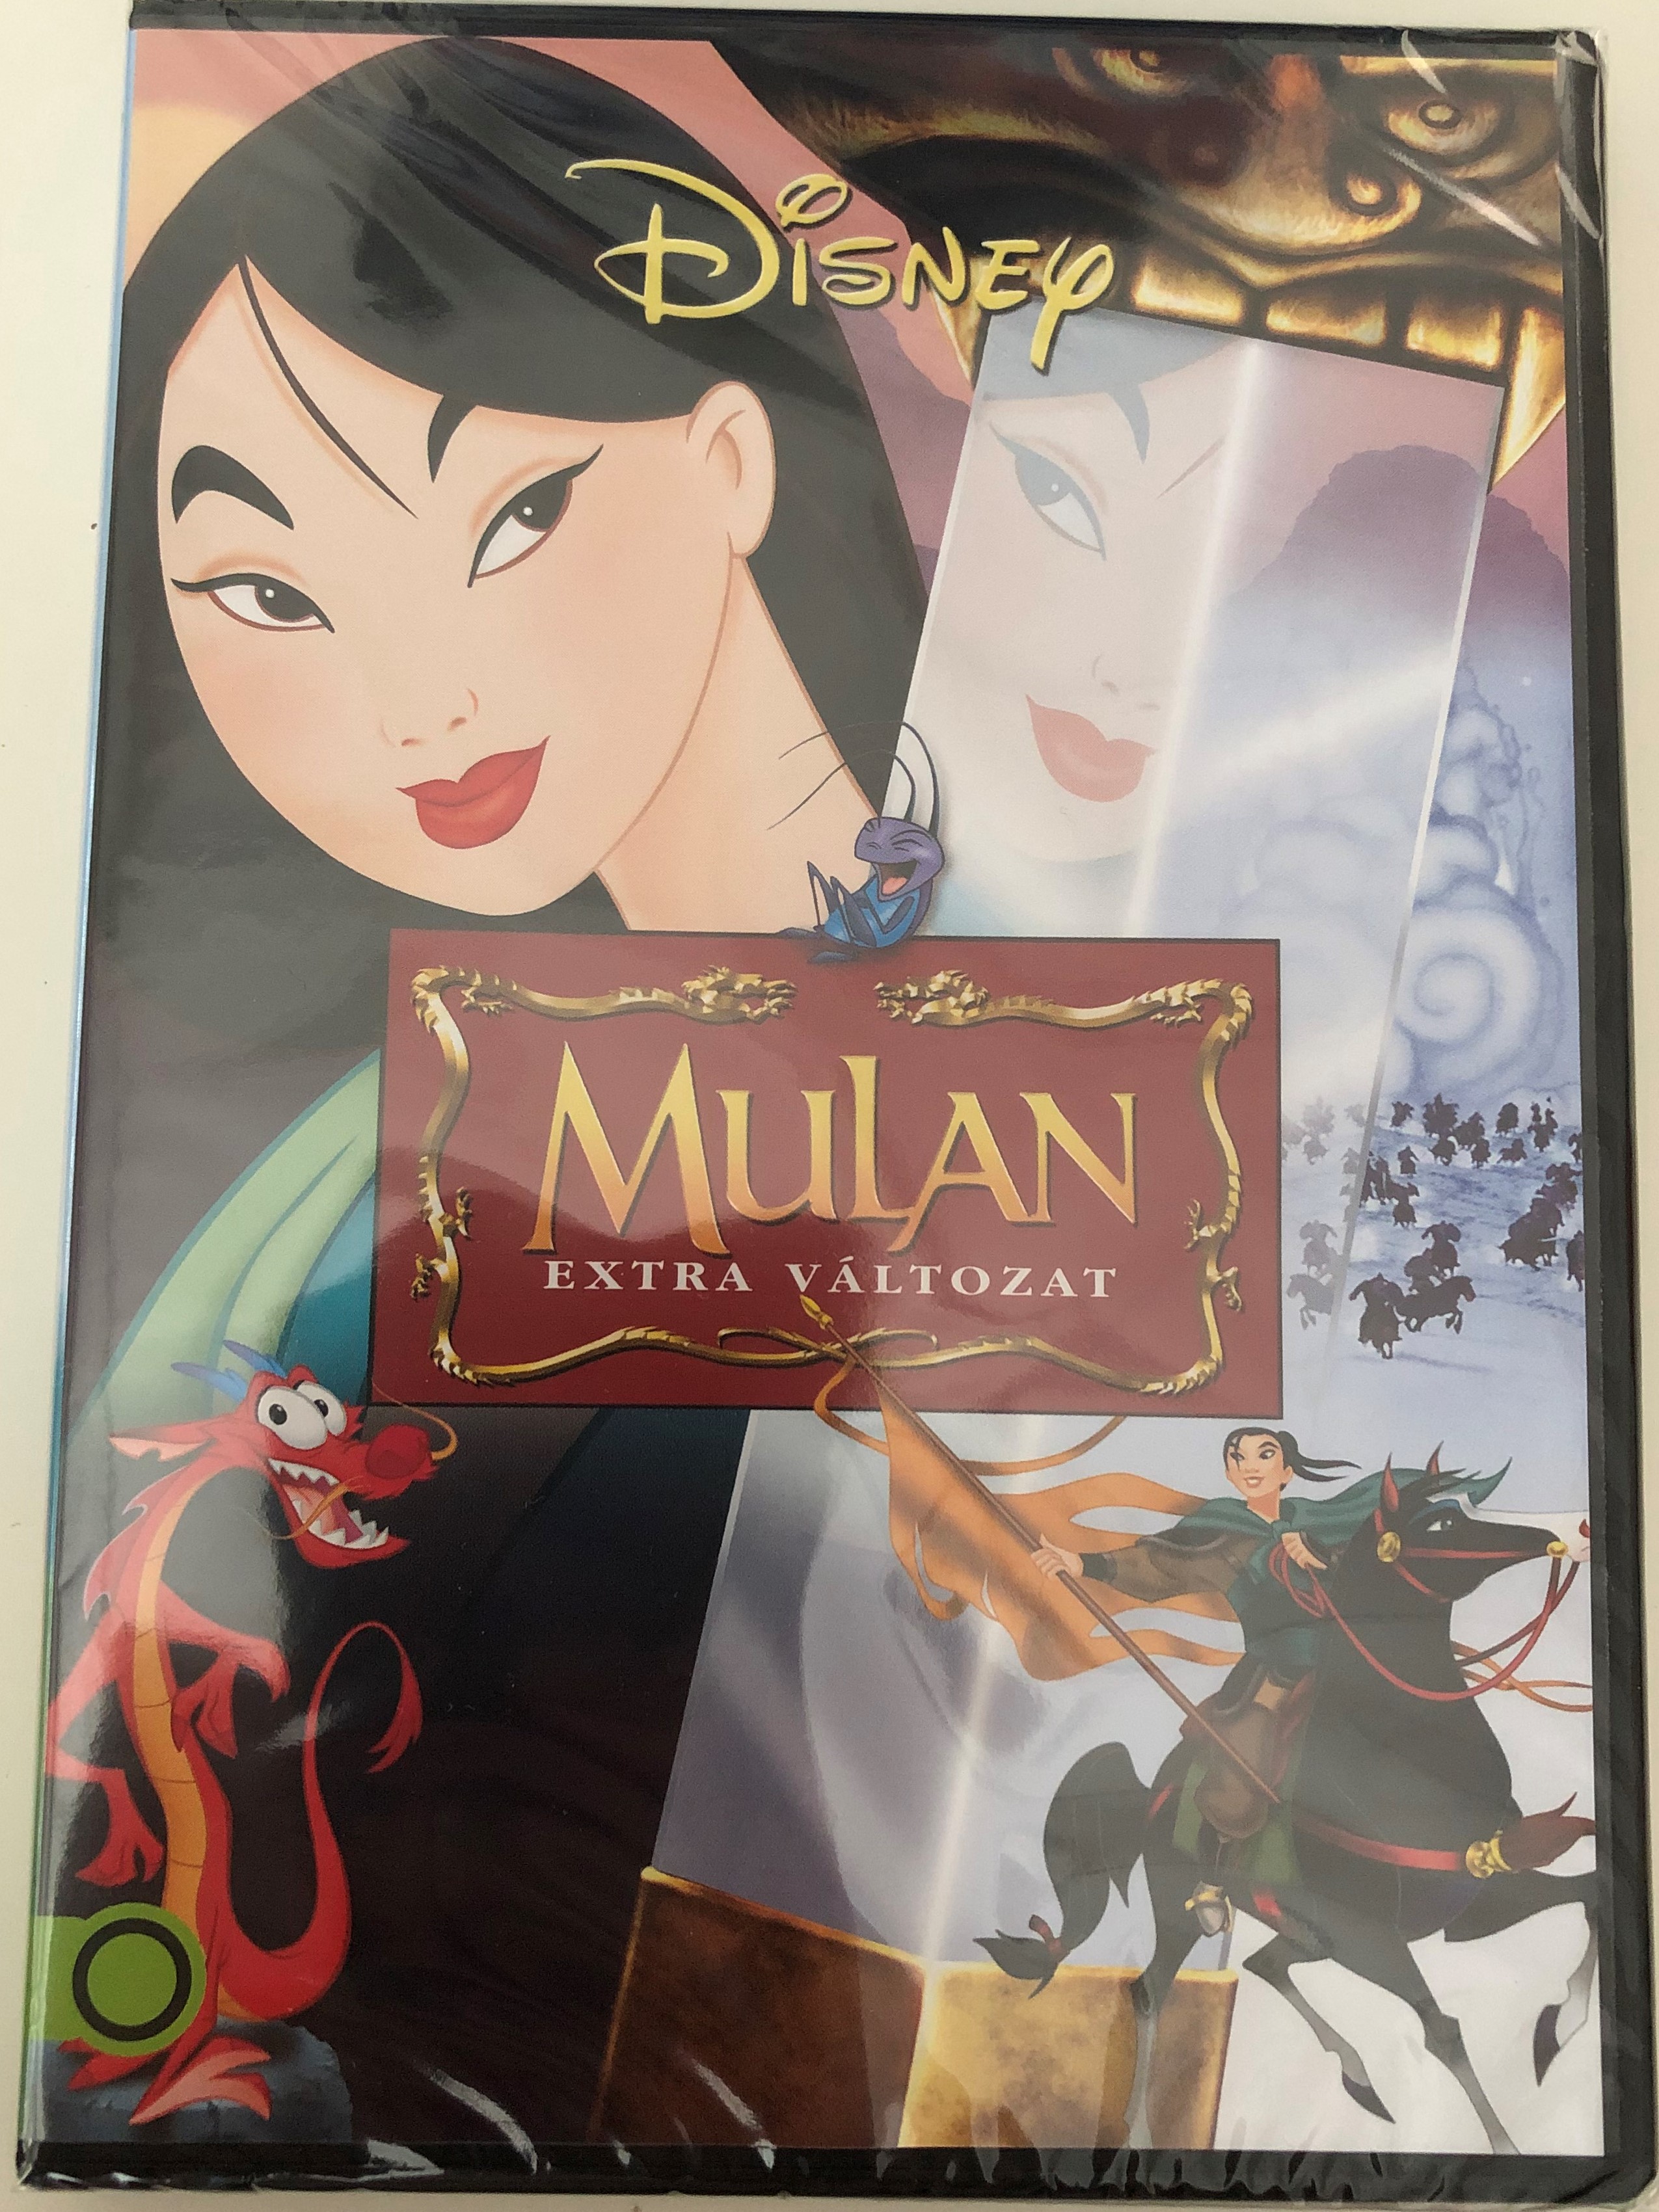 mulan-special-edition-dvd-1998-mulan-extra-v-ltozat-1.jpg